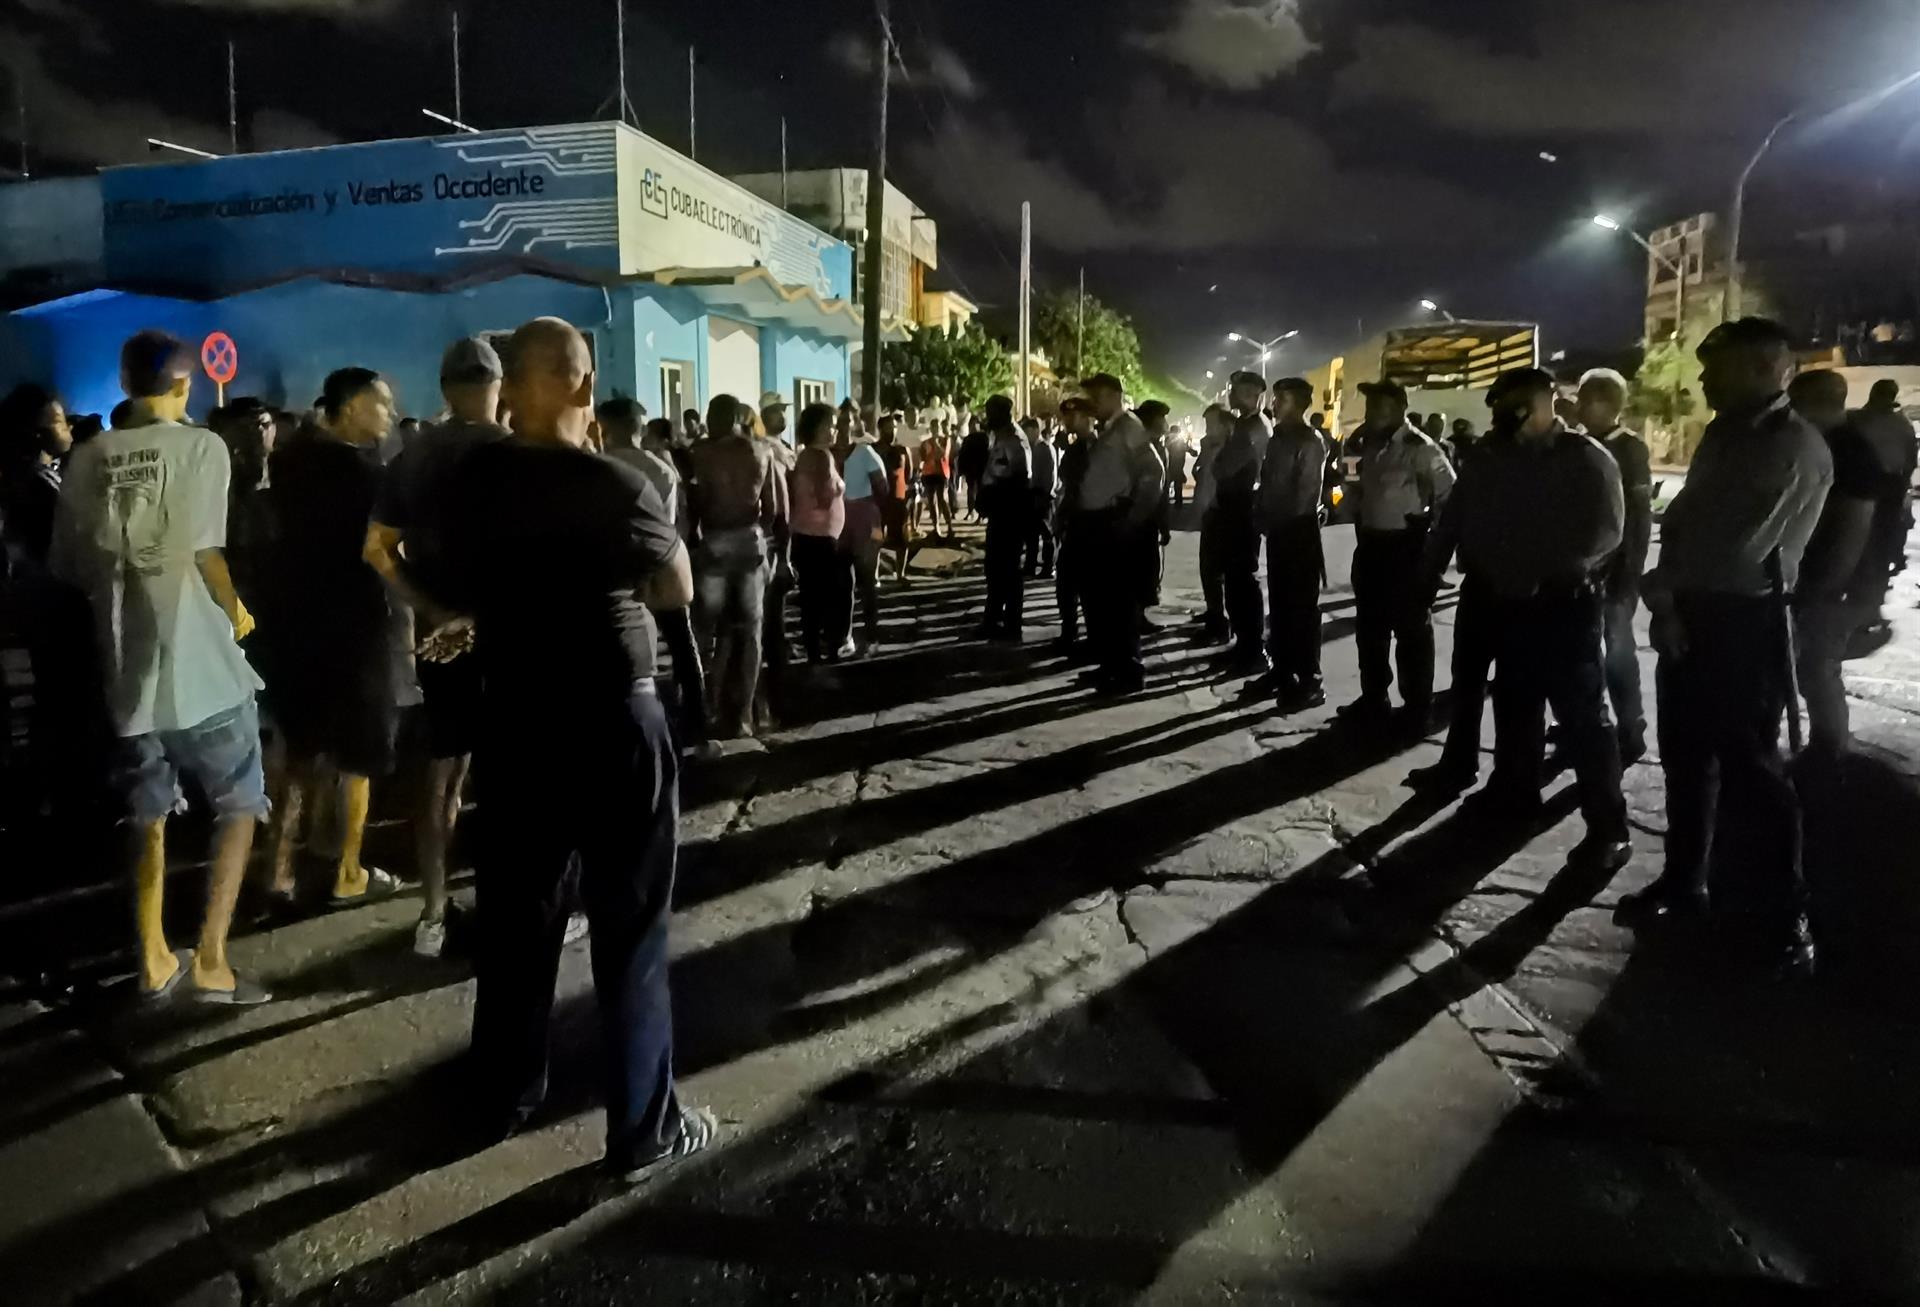 Varias personas se manifiestan exigiendo regrese la electricidad y comida, durante la noche del 30 de septiembre del 2022, hoy, en La Habana (Cuba). EFE/ Yander Zamora MÁXIMA CALIDAD DISPONIBLE
